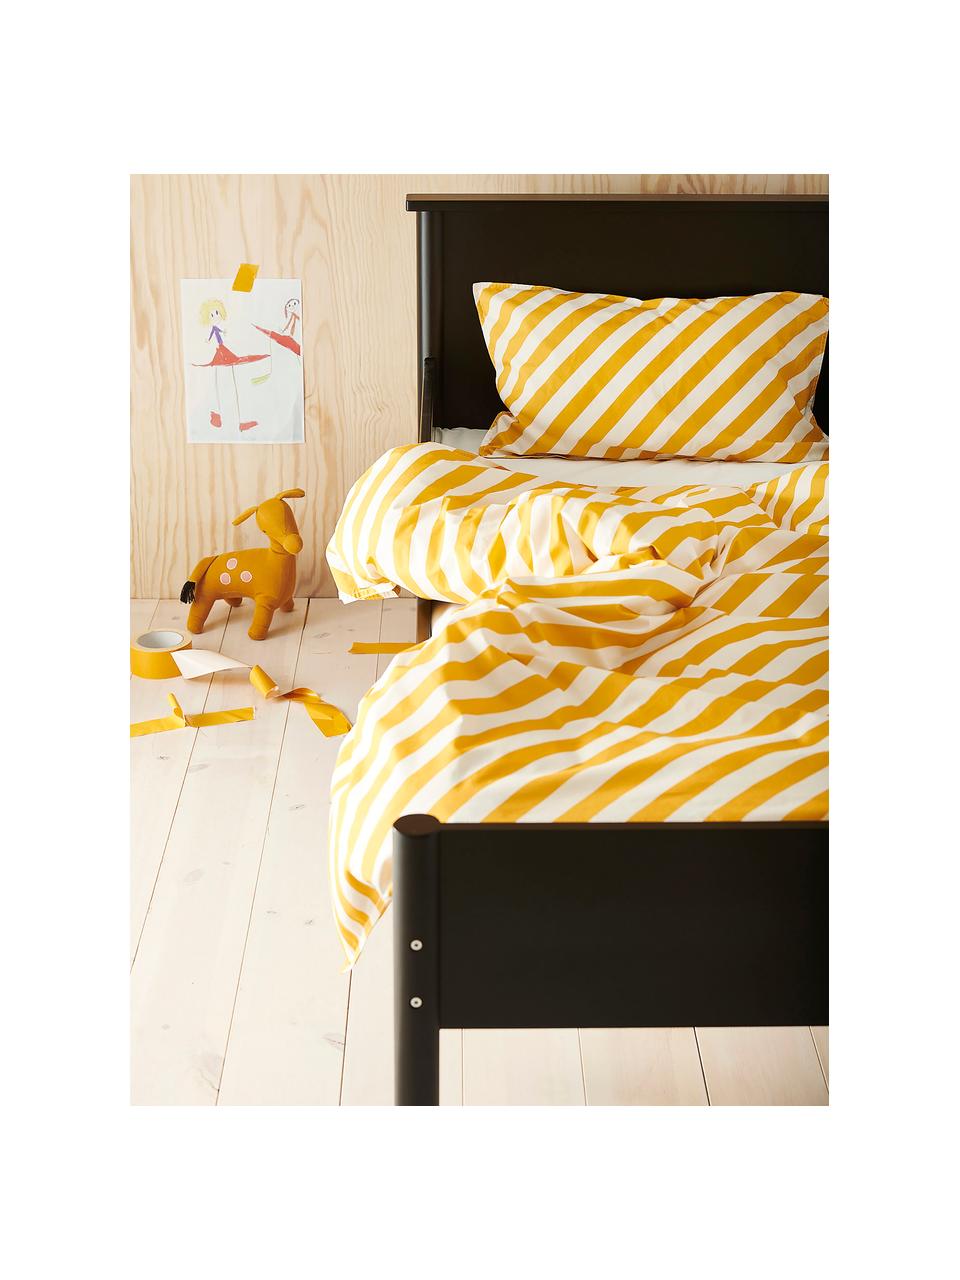 Biancheria da letto a righe in cotone percalle giallo/bianco Franny, Tessuto: percalle, Giallo, bianco, 100 x 130 cm + 1 federa 55 x 35 cm